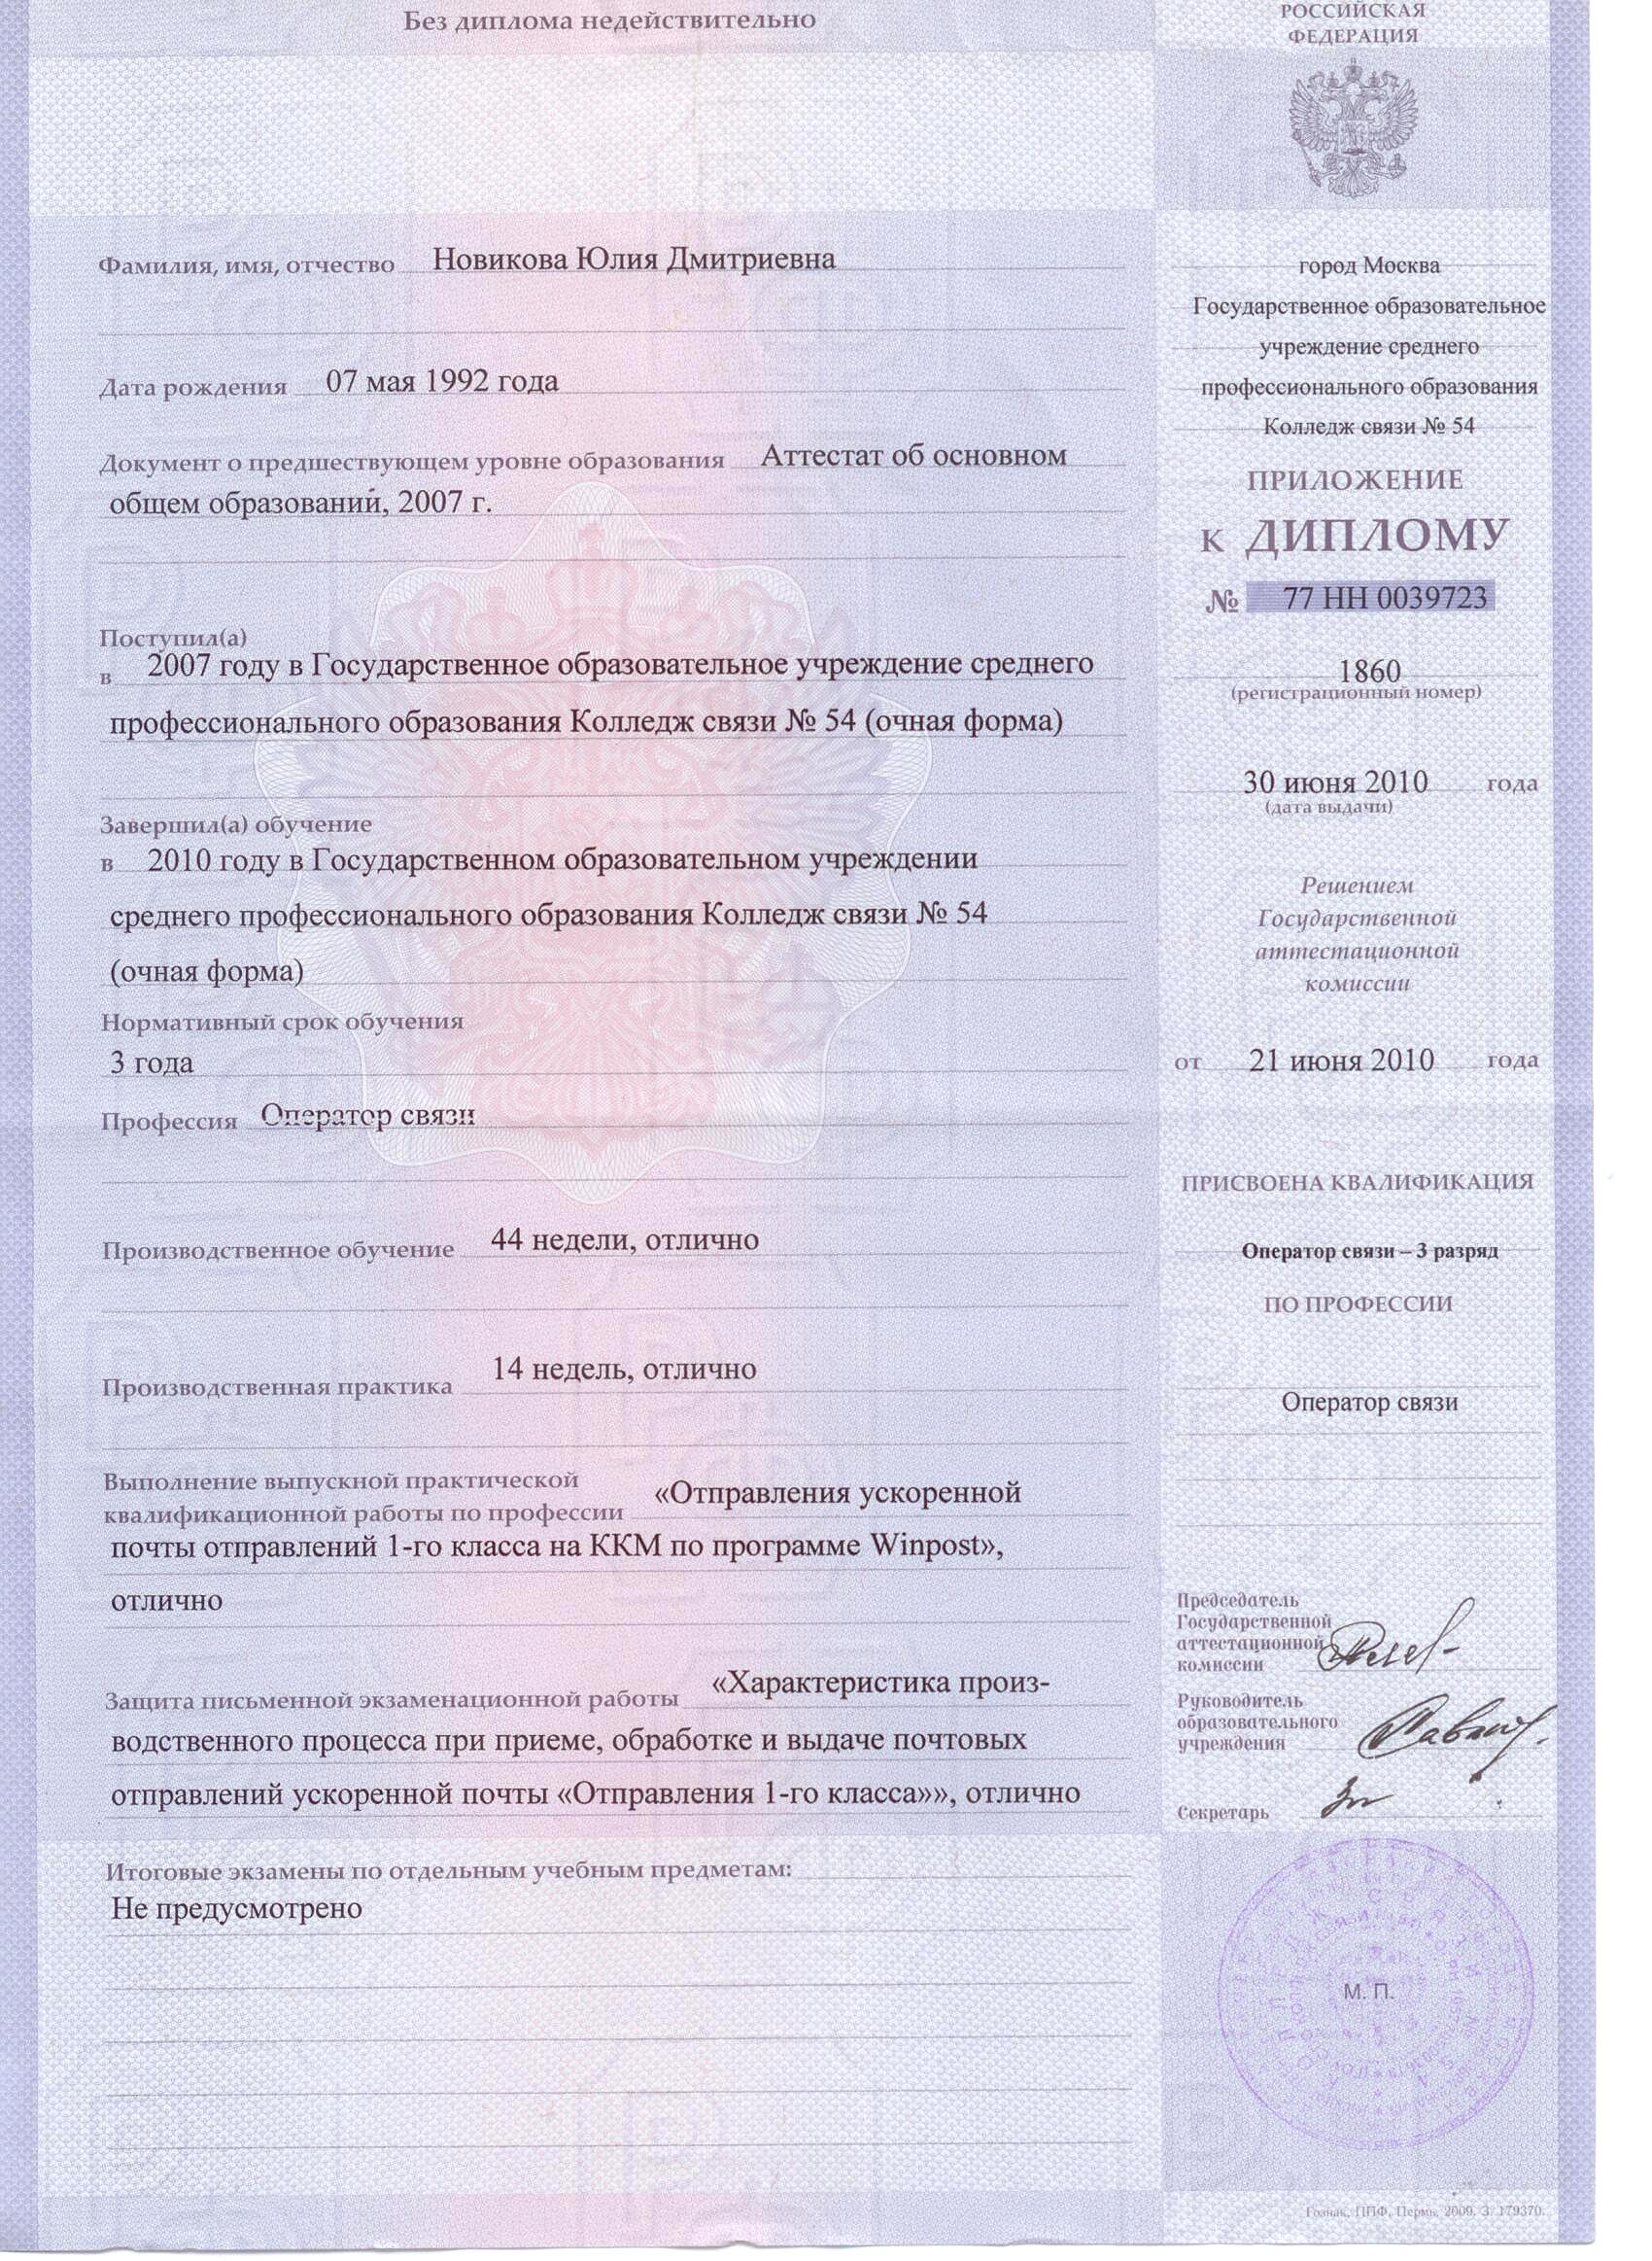 Приложение к диплому НПО Новиковой Ю.И.jpg